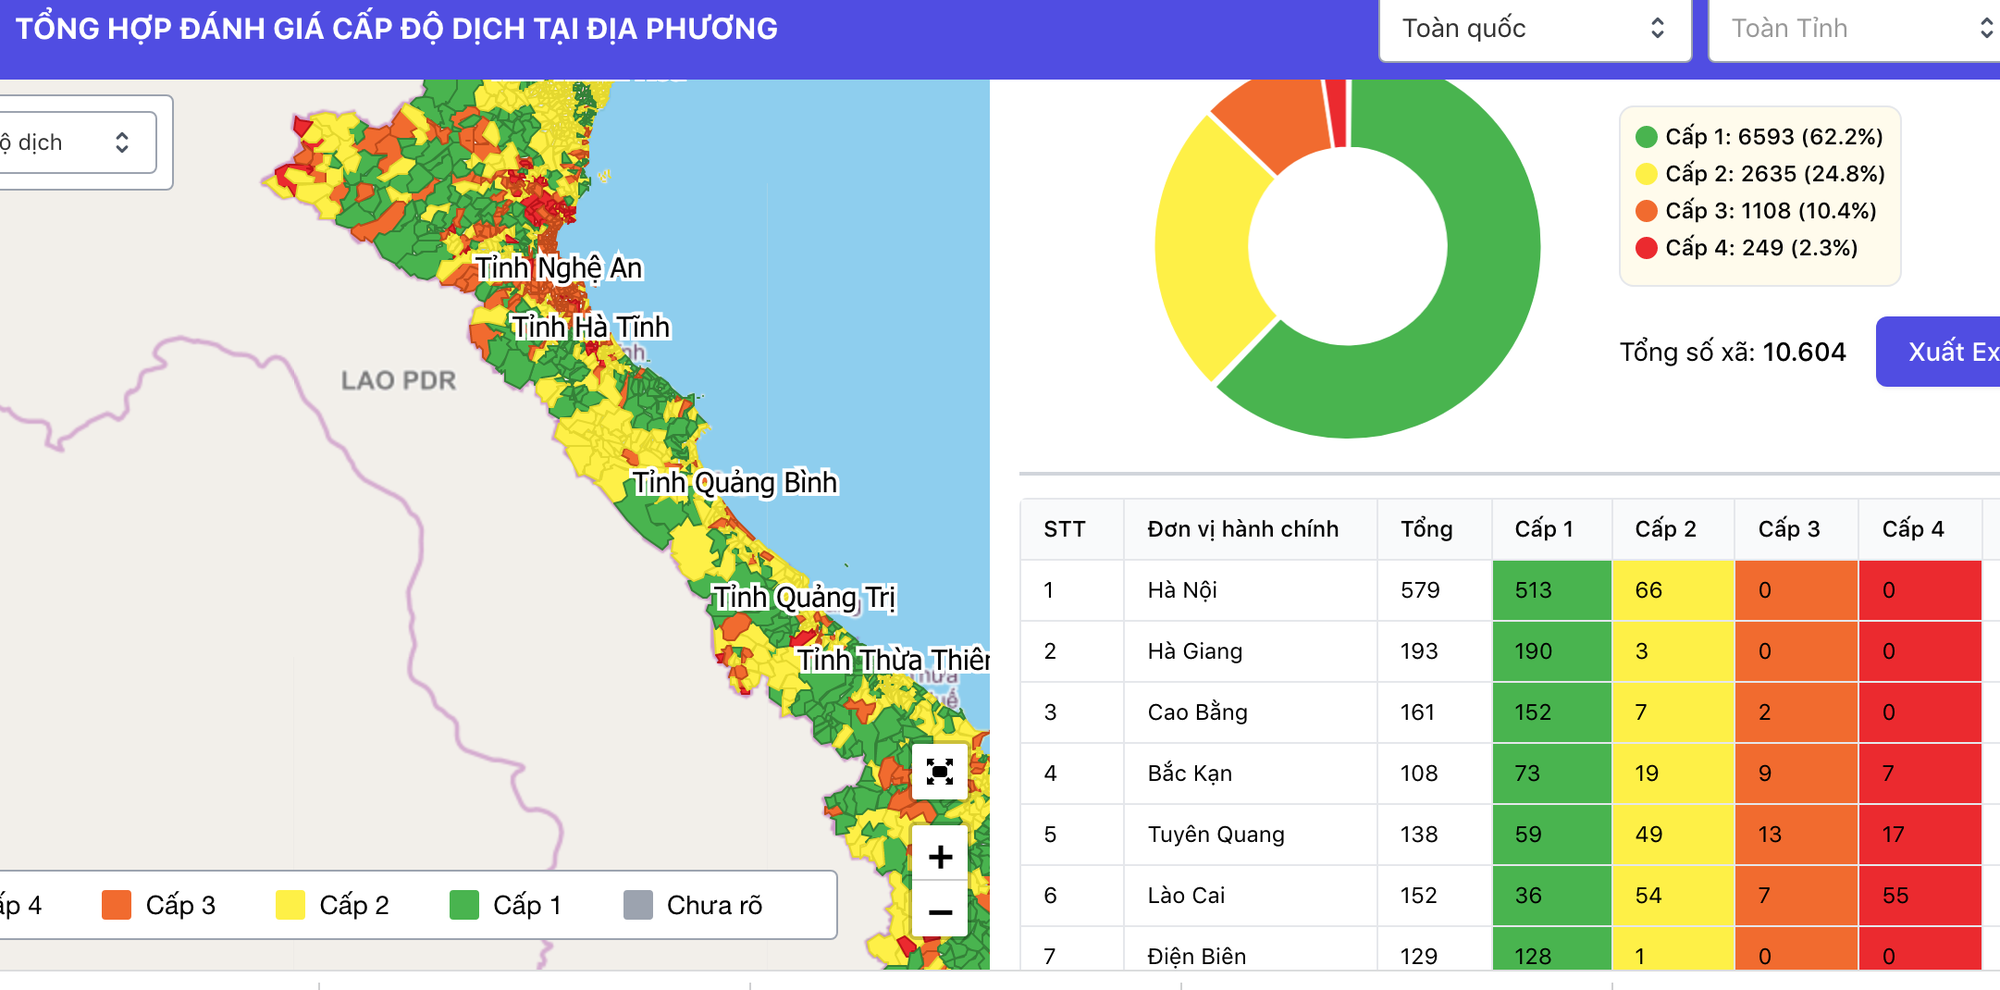 Những thông tin mới nhất về bản đồ dịch Lâm Đồng năm 2024 sẽ khiến bạn thích thú. Được cập nhật liên tục, bản đồ sẽ giúp bạn tiếp cận với những địa điểm du lịch nổi tiếng và tìm hiểu về tiềm năng kinh tế của khu vực này.